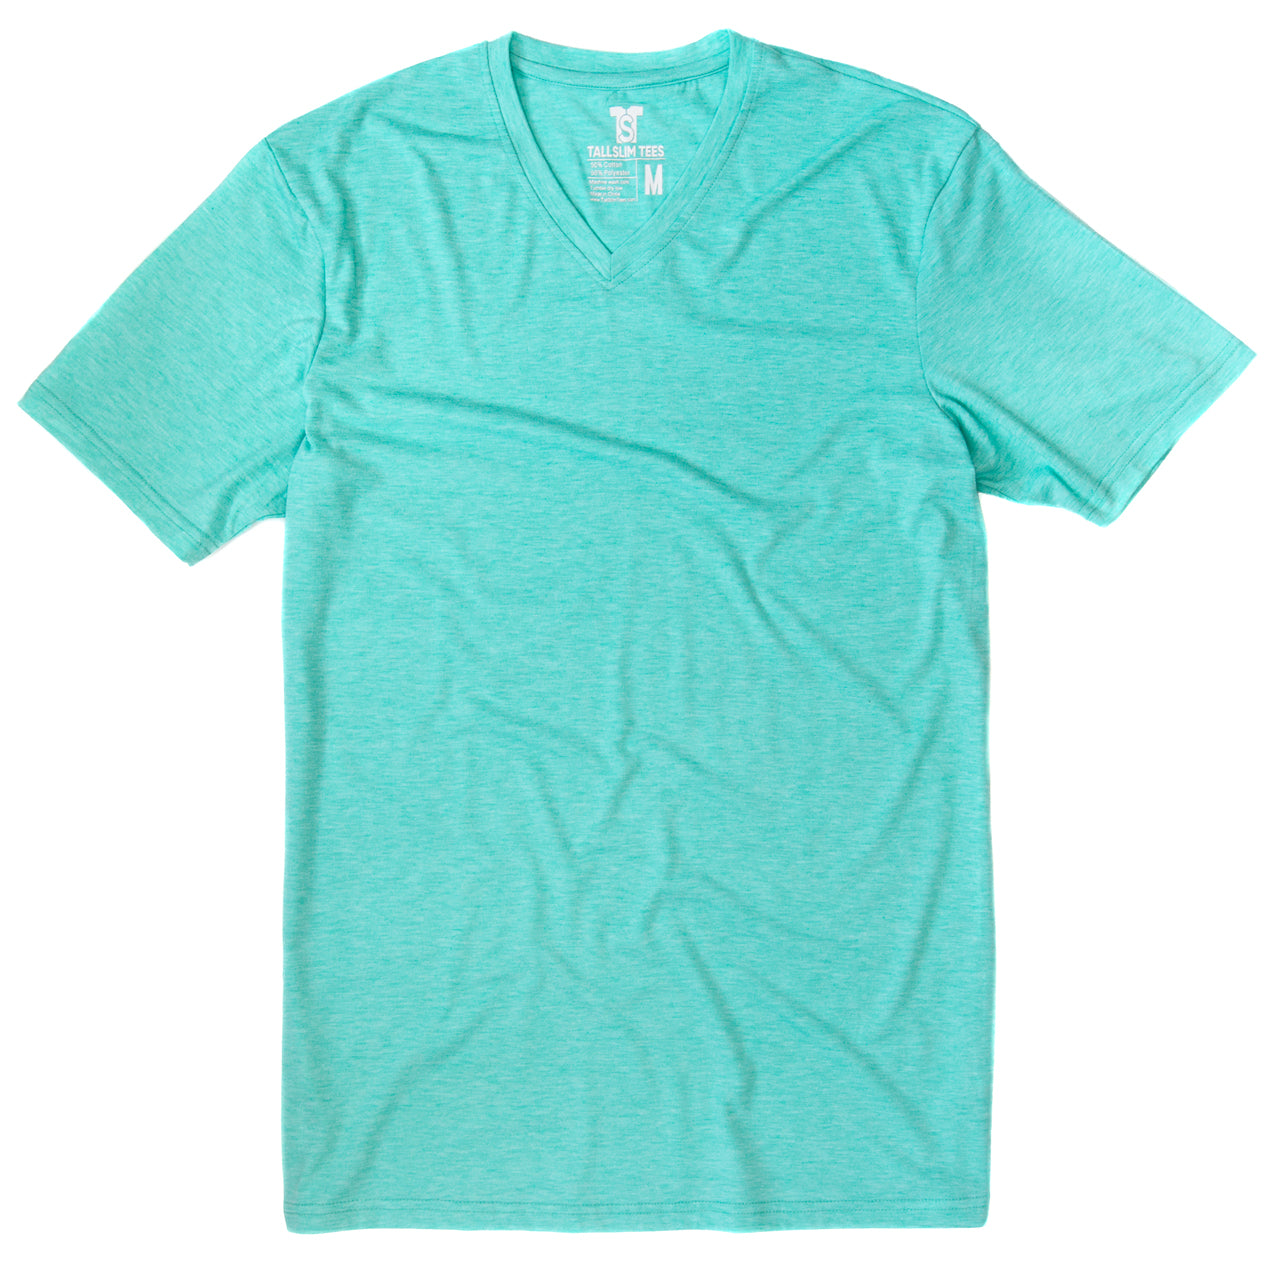 Aqua Blue V-Neck Shirt for Tall Slim Men